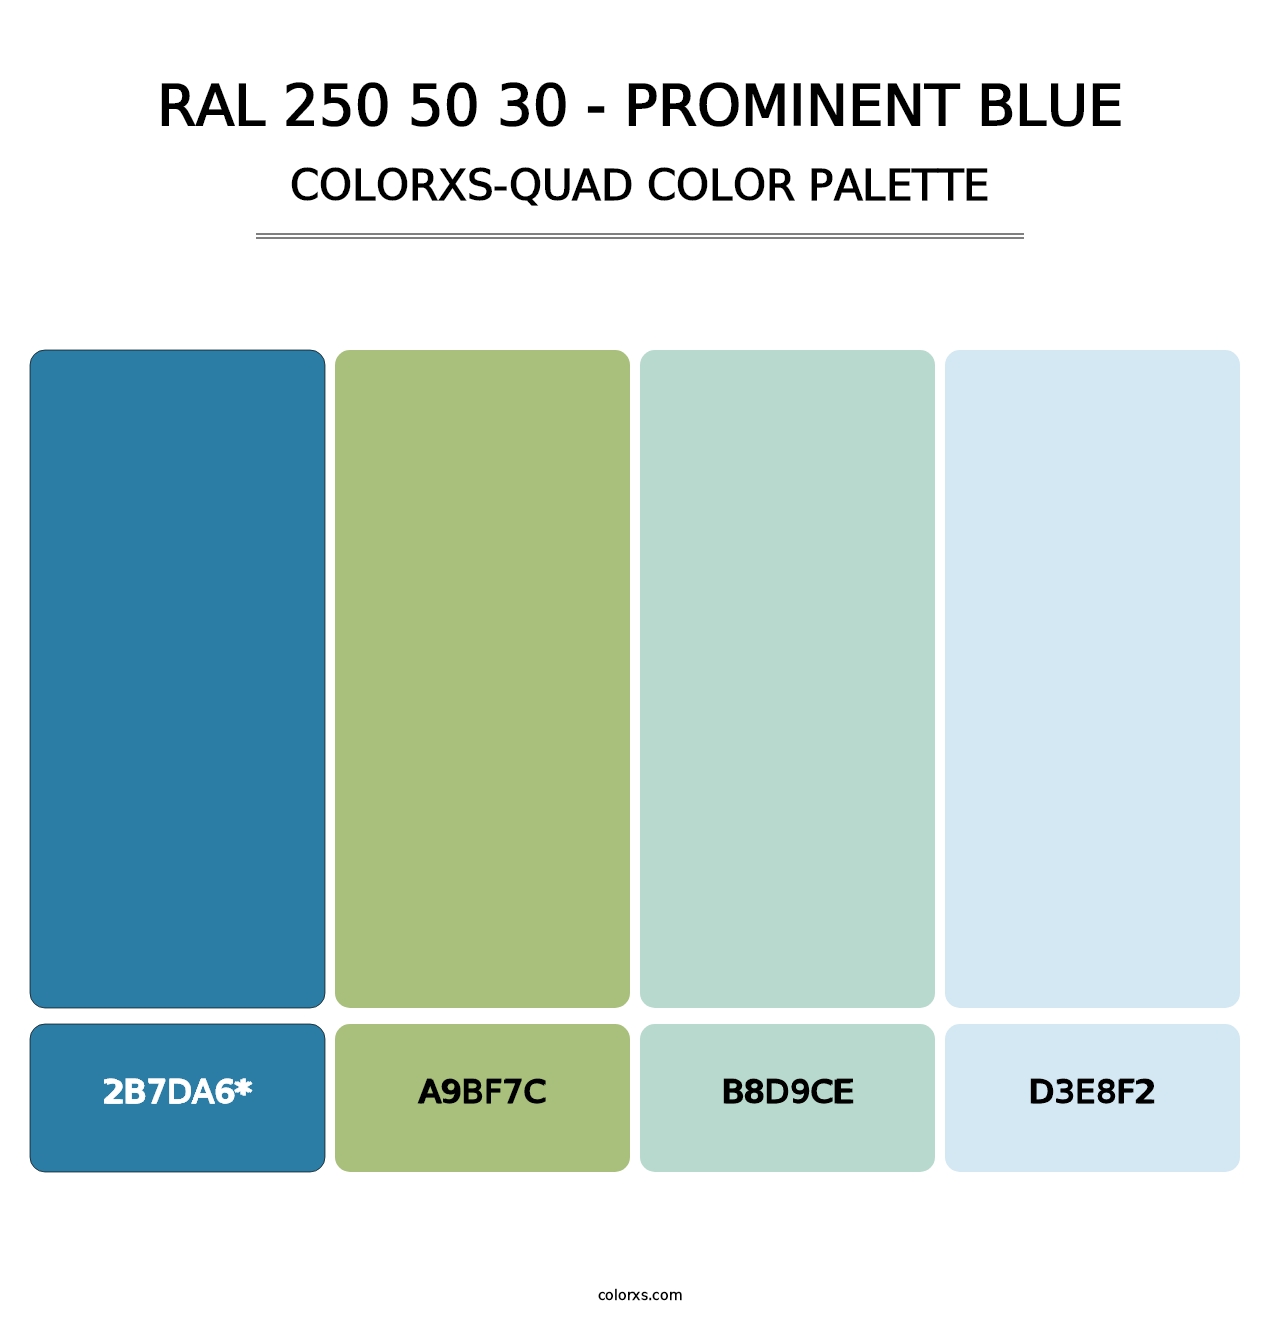 RAL 250 50 30 - Prominent Blue - Colorxs Quad Palette